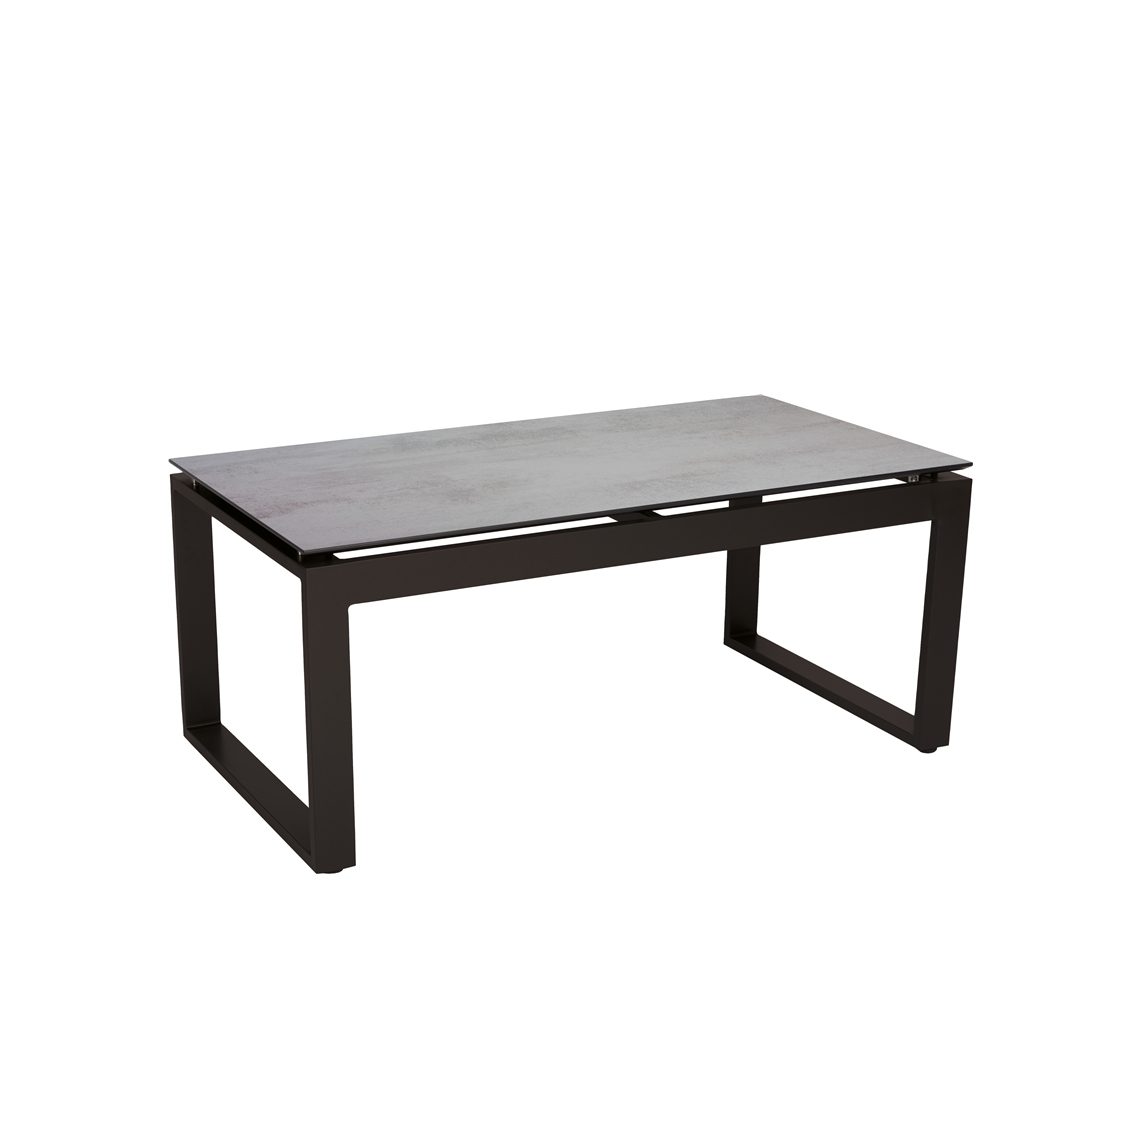 Stern "Allround" Beistelltisch, Gestell Aluminium schwarz matt, Tischplatte HPL zement hell